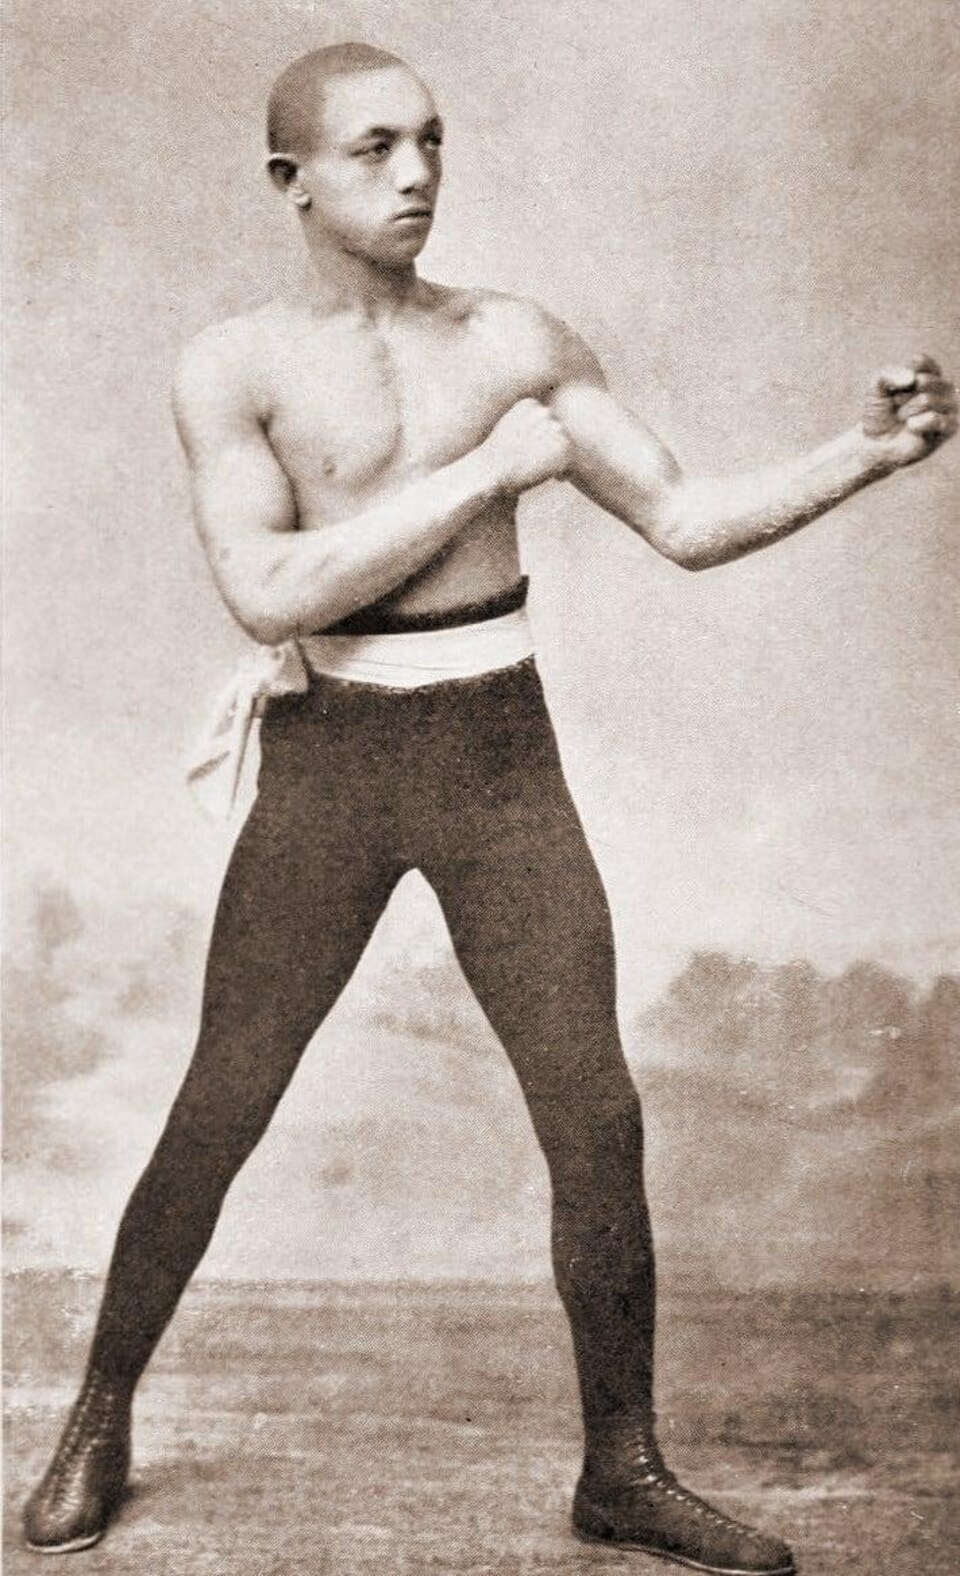 Photo sépia d'un boxeur du 19e siècle en position de combat.